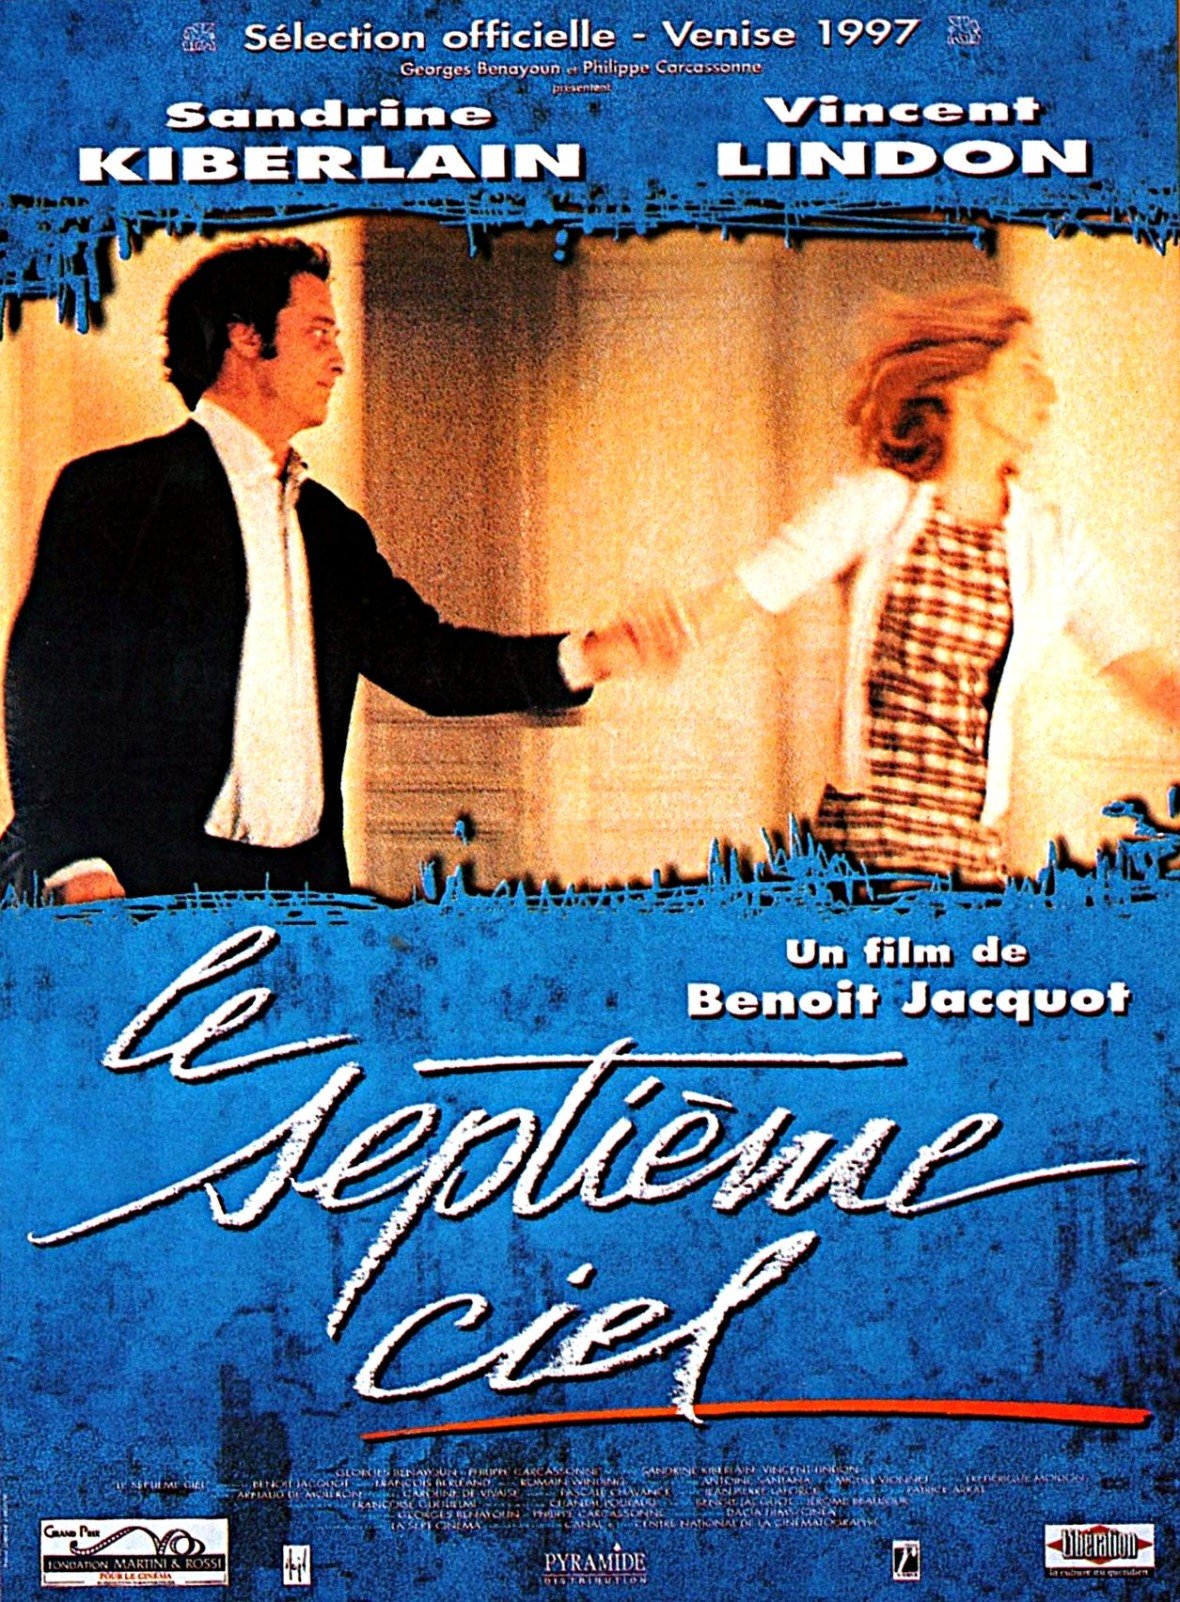 Poster of the movie Le Septième ciel